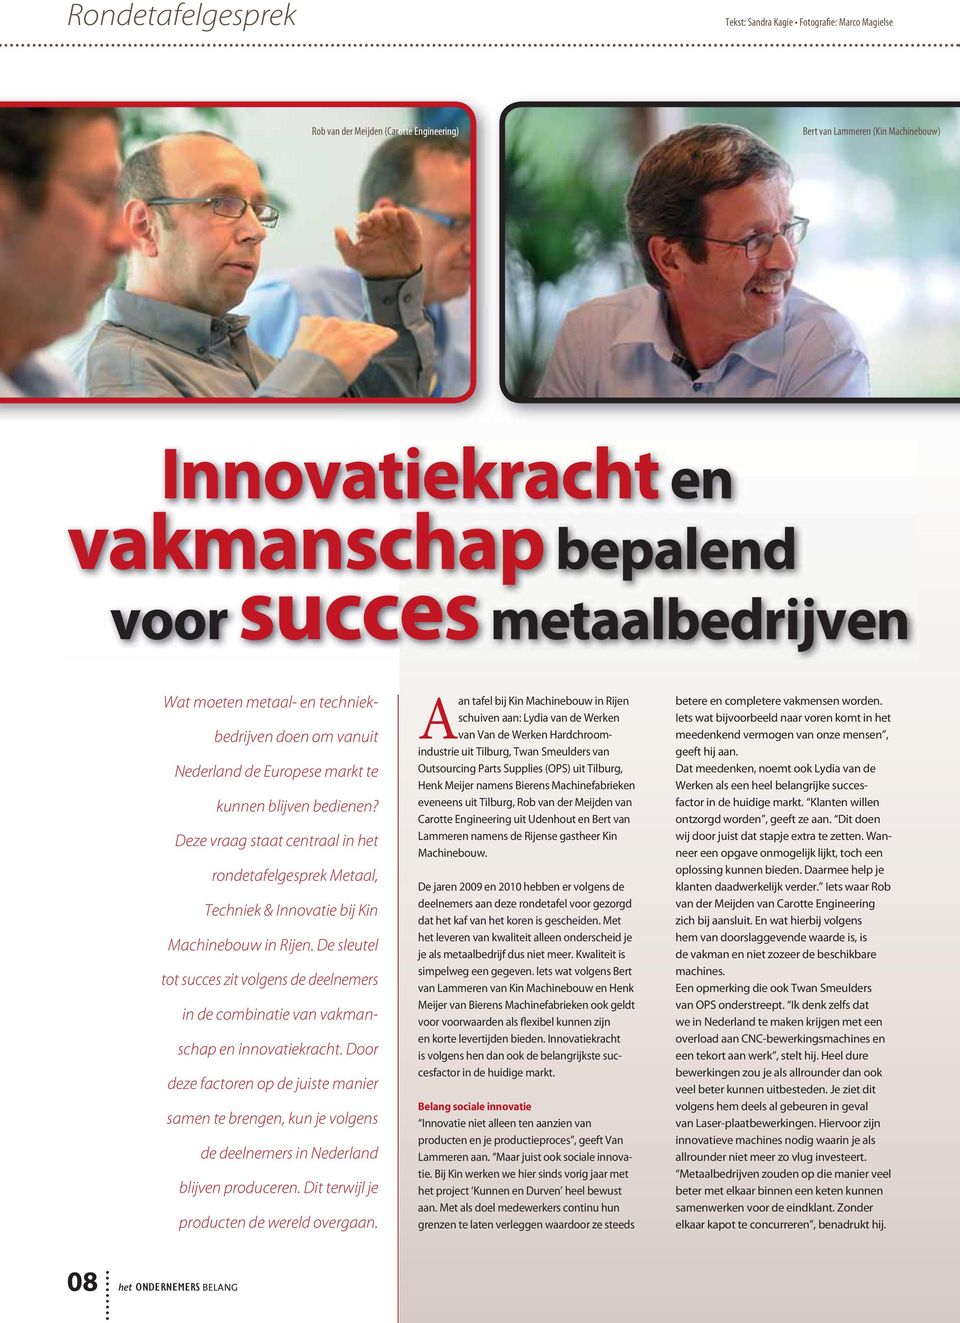 Deze vraag staat centraal in het rondetafelgesprek Metaal, Techniek & Innovatie bij Kin Machinebouw in Rijen.